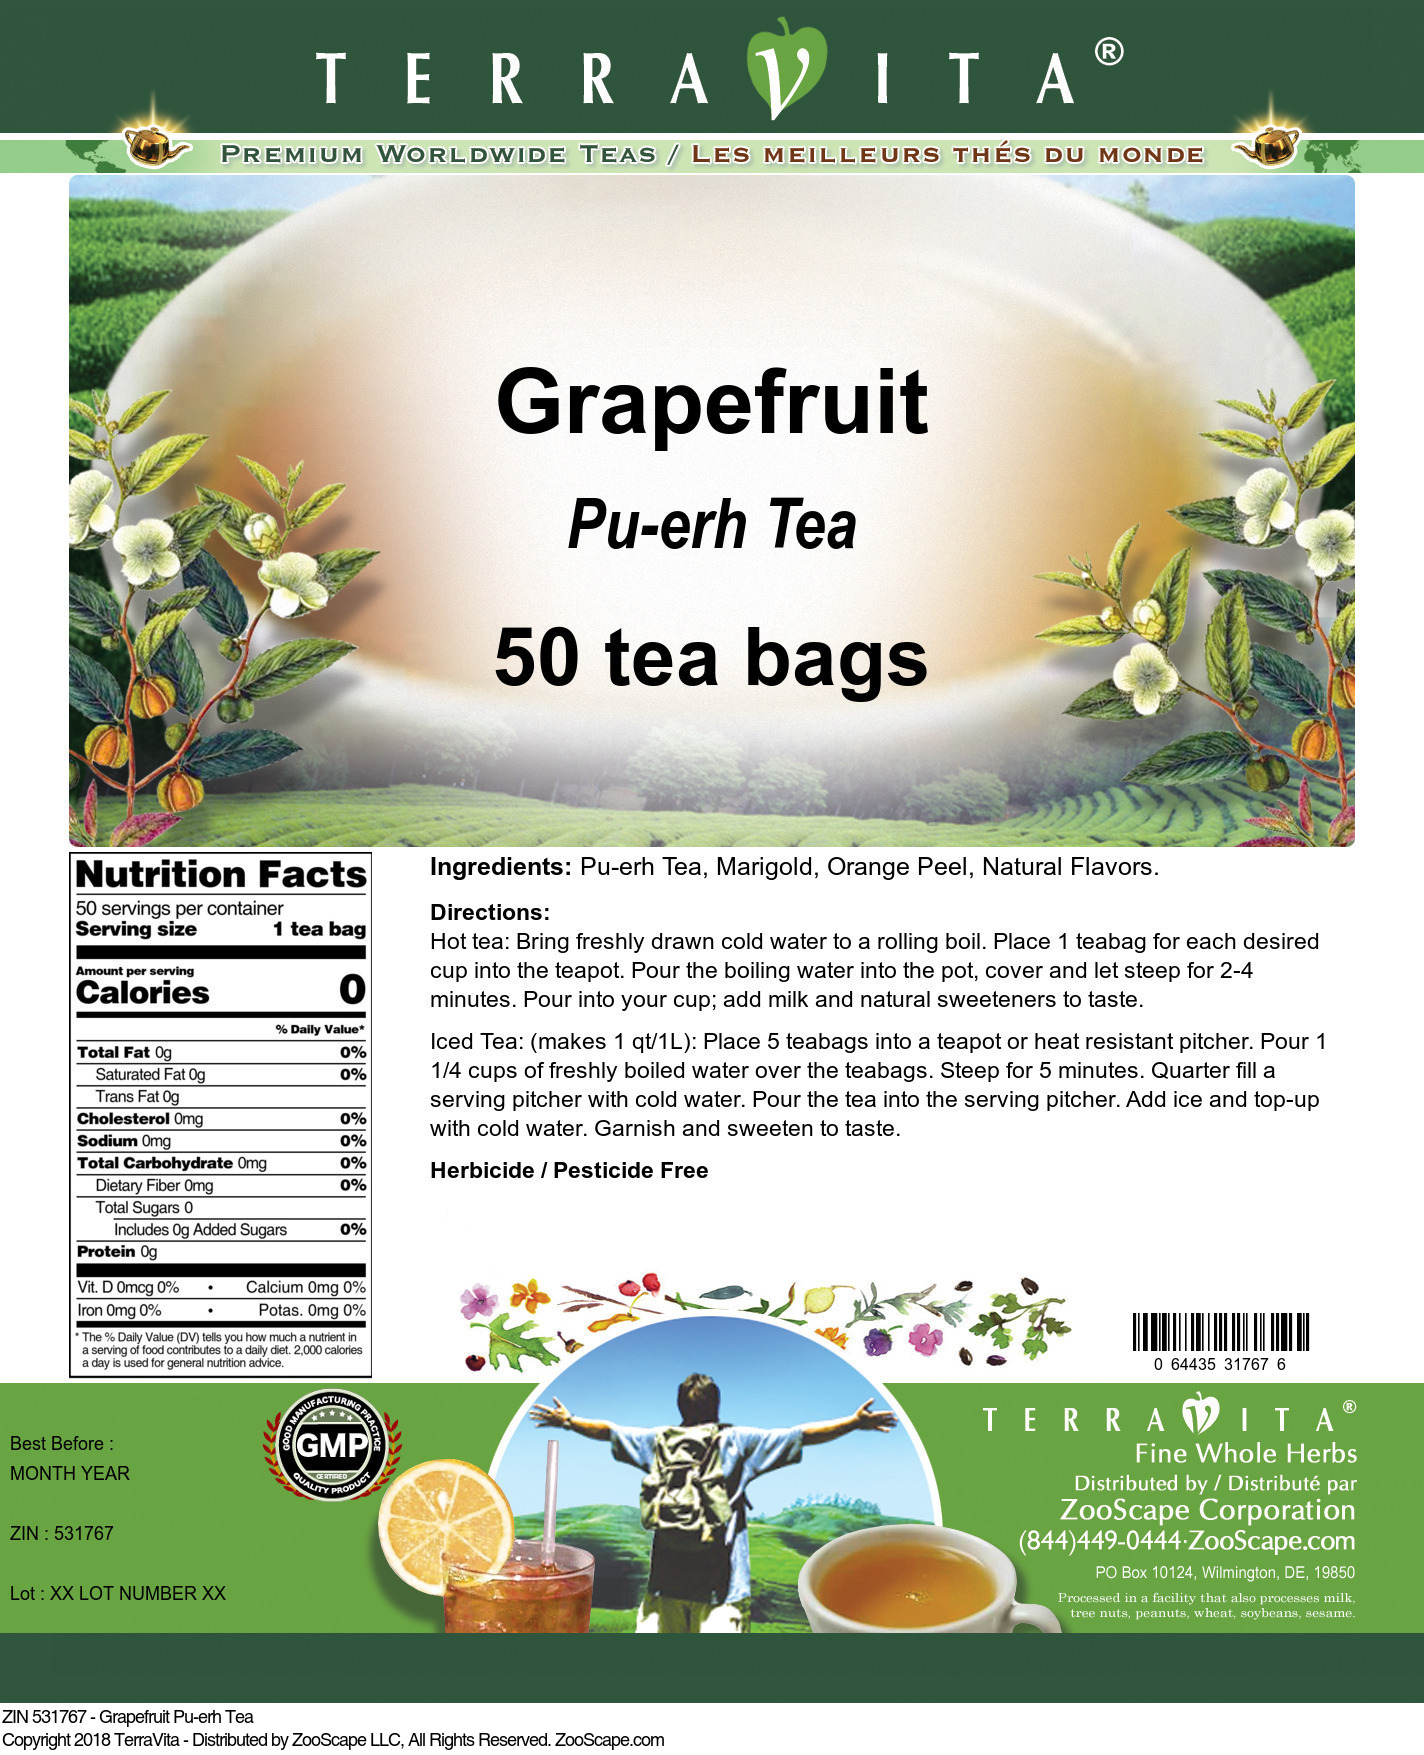 Grapefruit Pu-erh Tea - Label